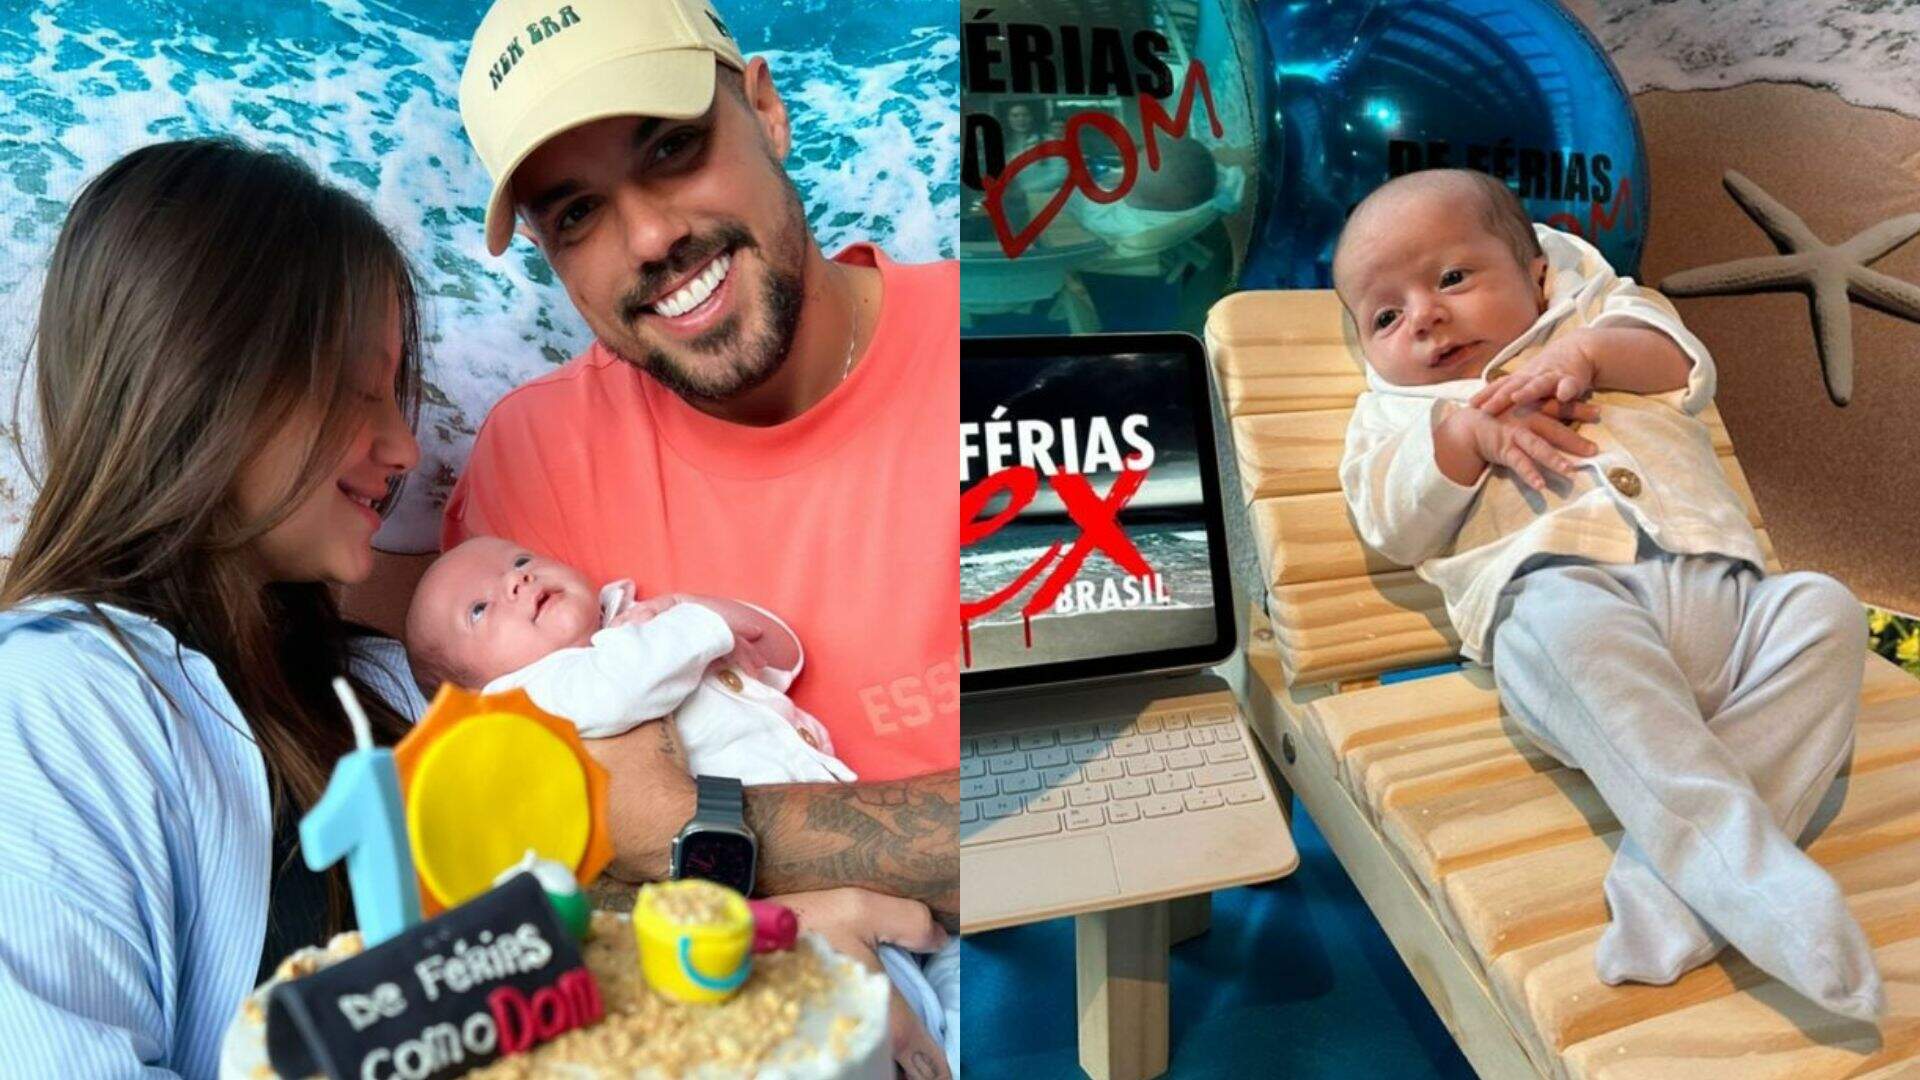 Diferentão! Lipe Ribeiro e Dessa Castorino celebram primeiro mês de vida do filho com festinha temática do “De Férias com o Ex” - Metropolitana FM